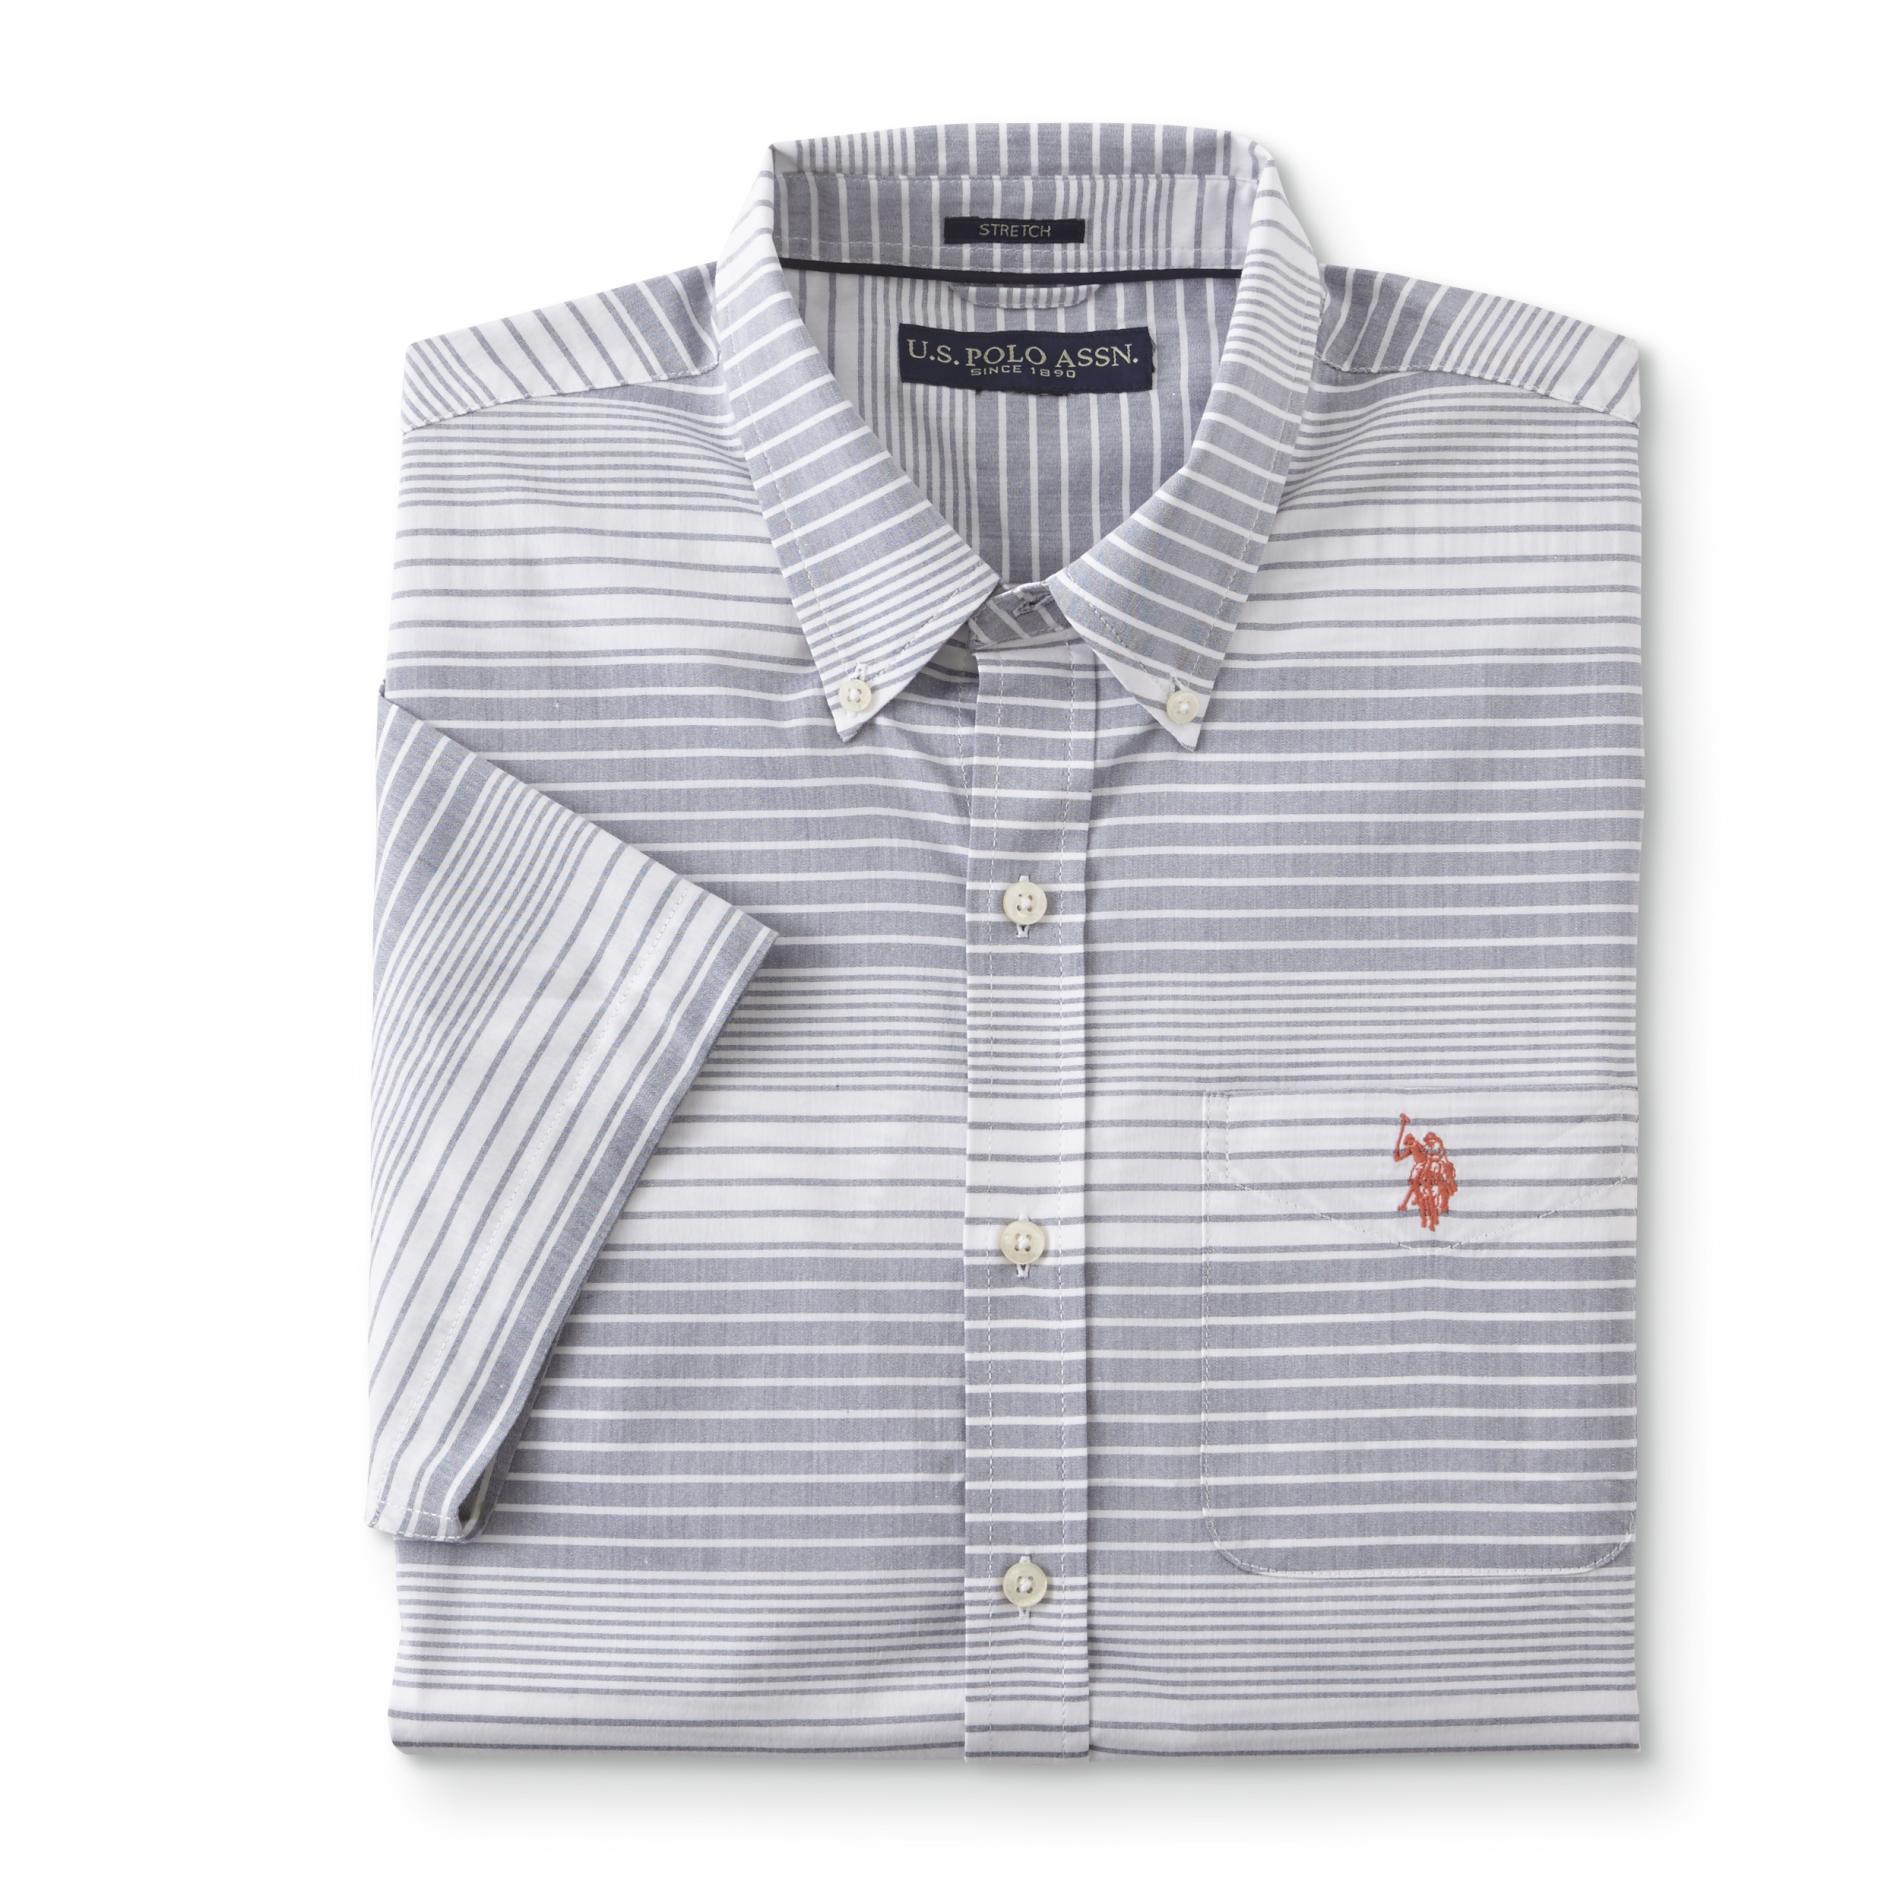 U.S. Polo Assn. Men's Short-Sleeve Dress Shirt - Striped